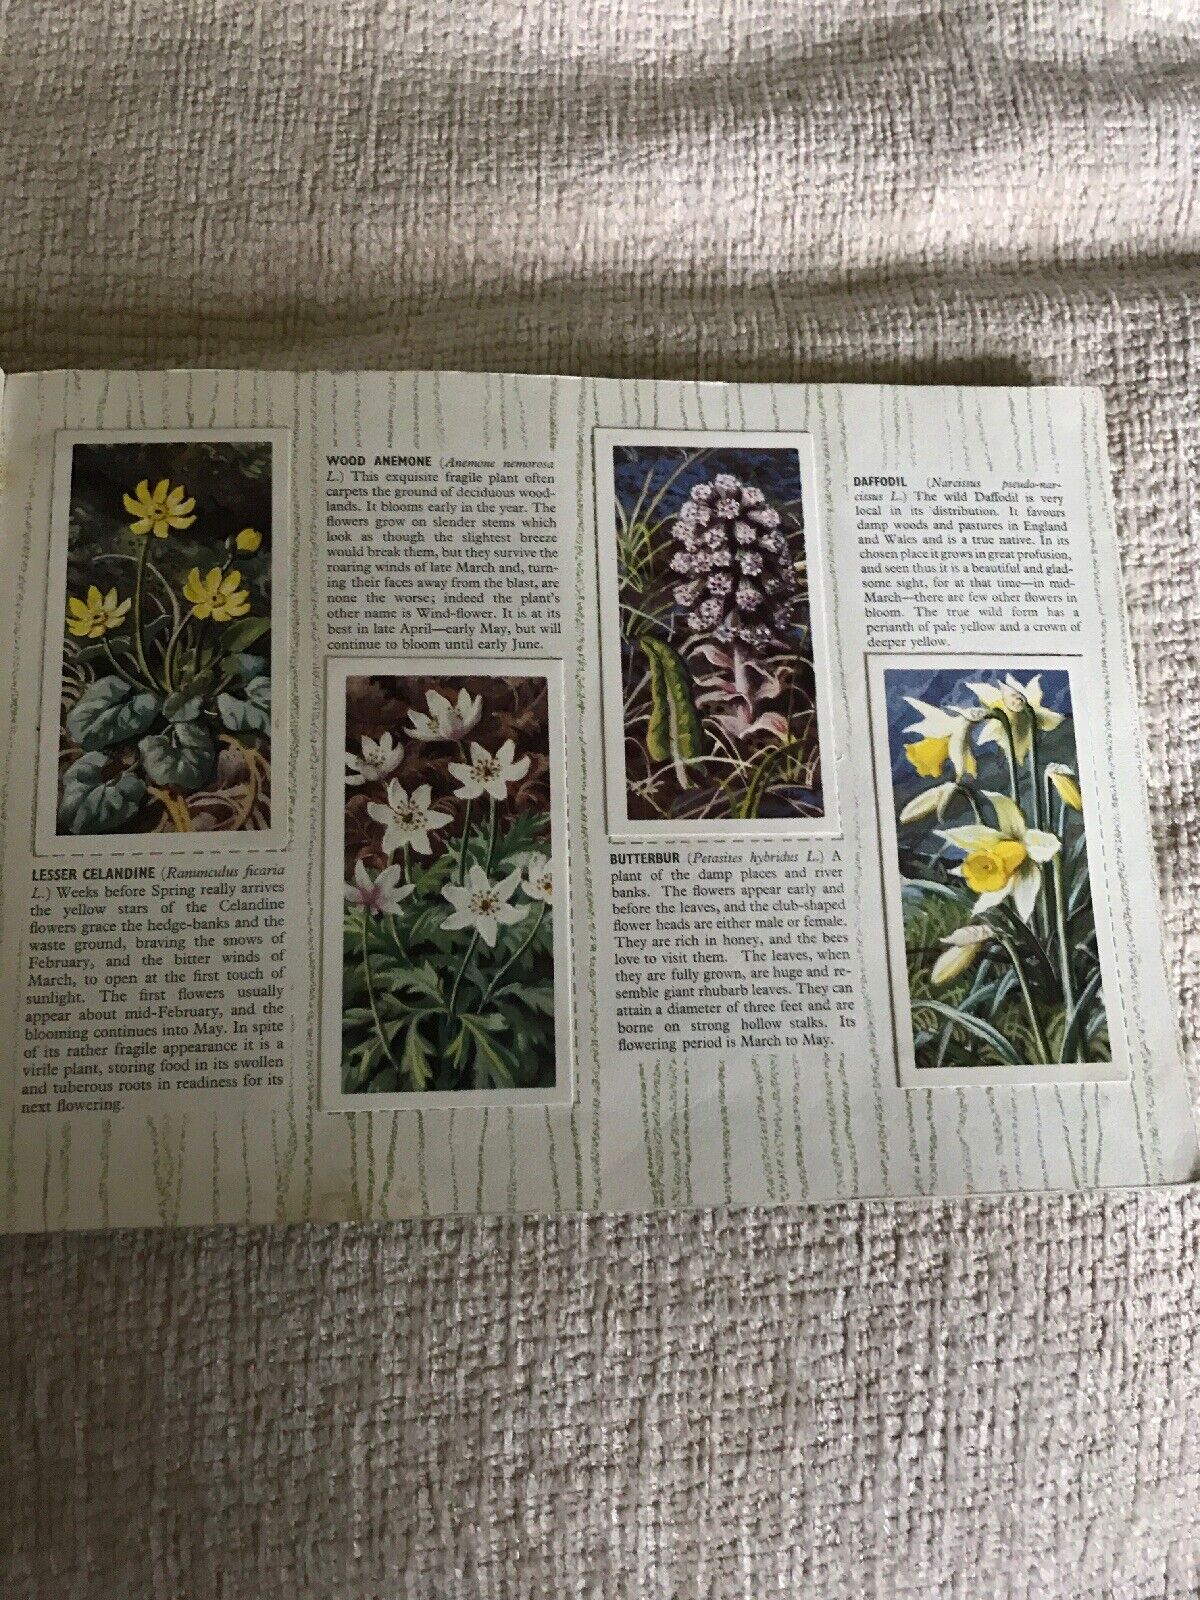 1960er Brook Bond Teekarten Wild Flowers (Serie 2)CF Tunnicliffe